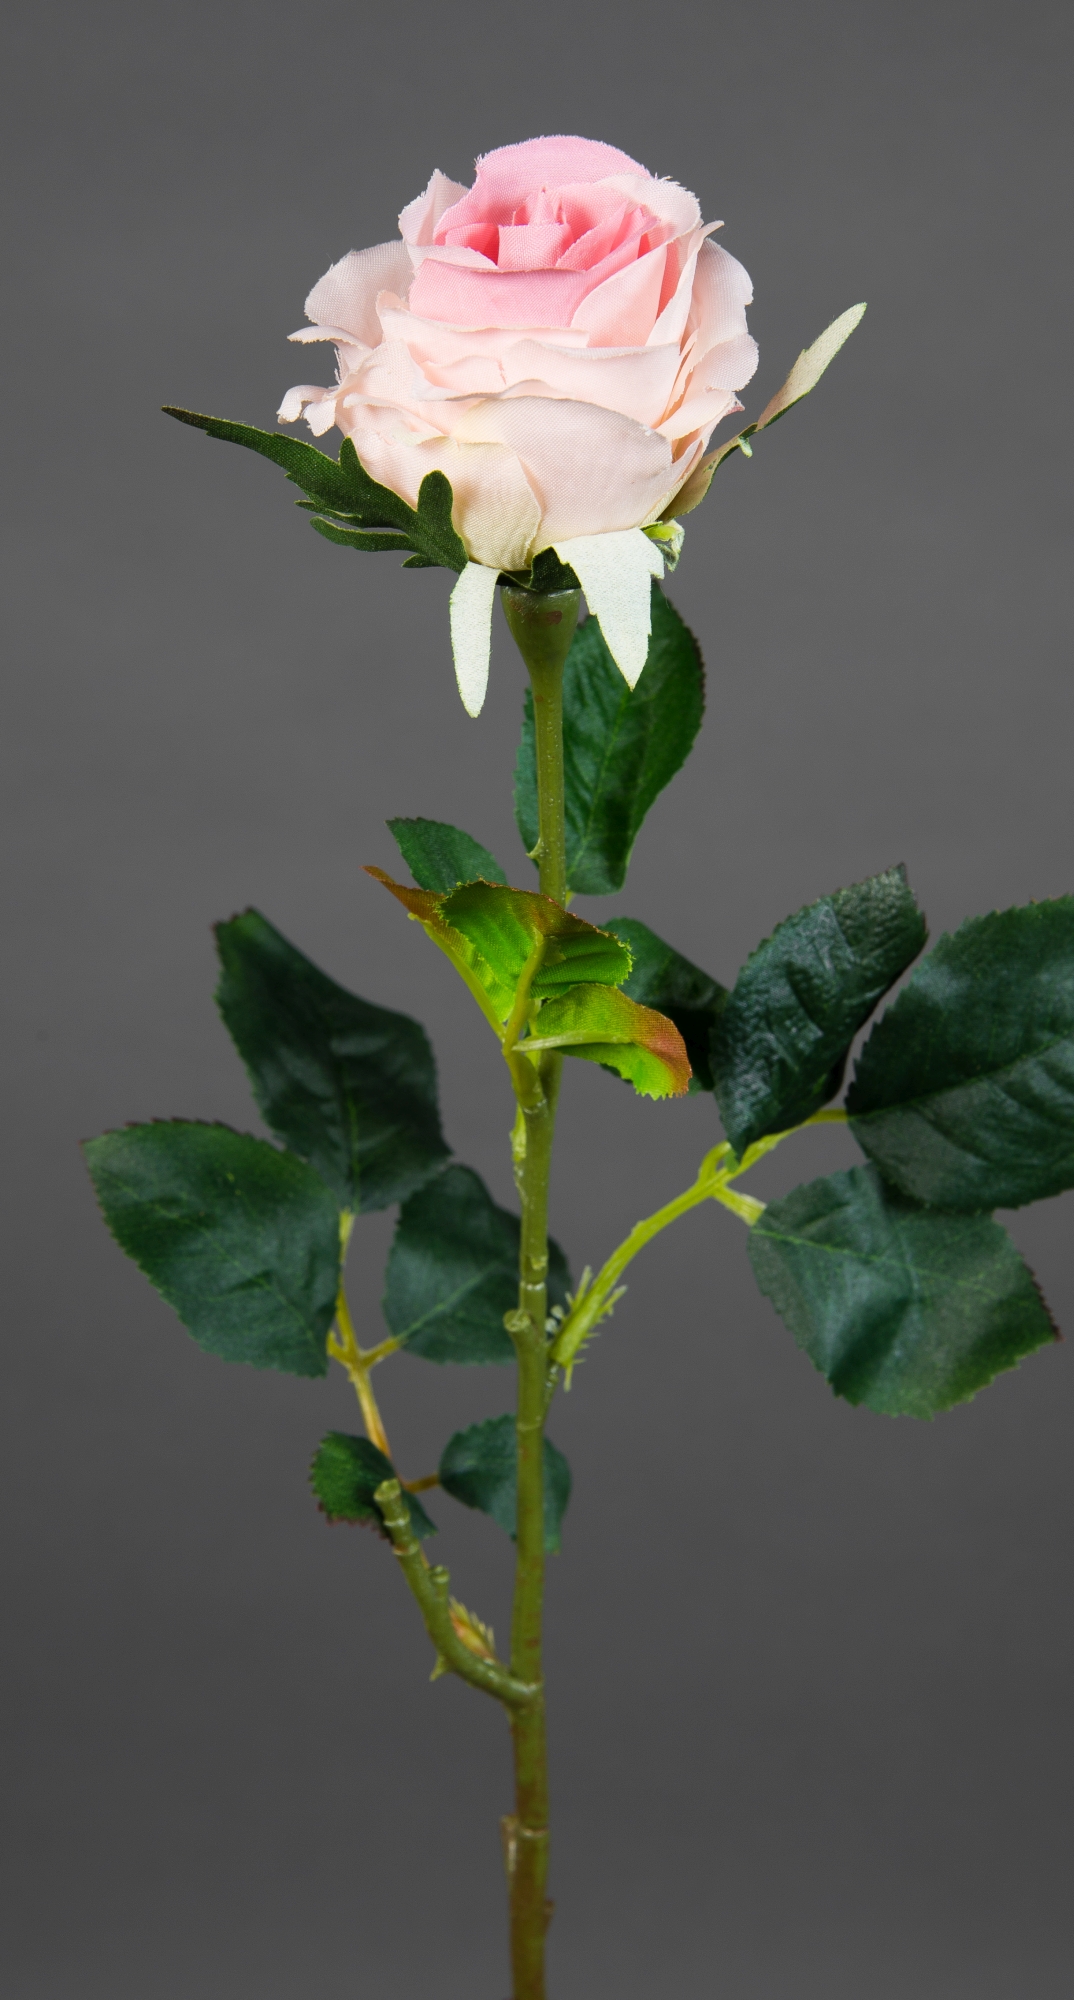 12 Stück Rose Elena 45cm rosa PM Seidenblumen Kunstblumen künstliche Blumen Rosen